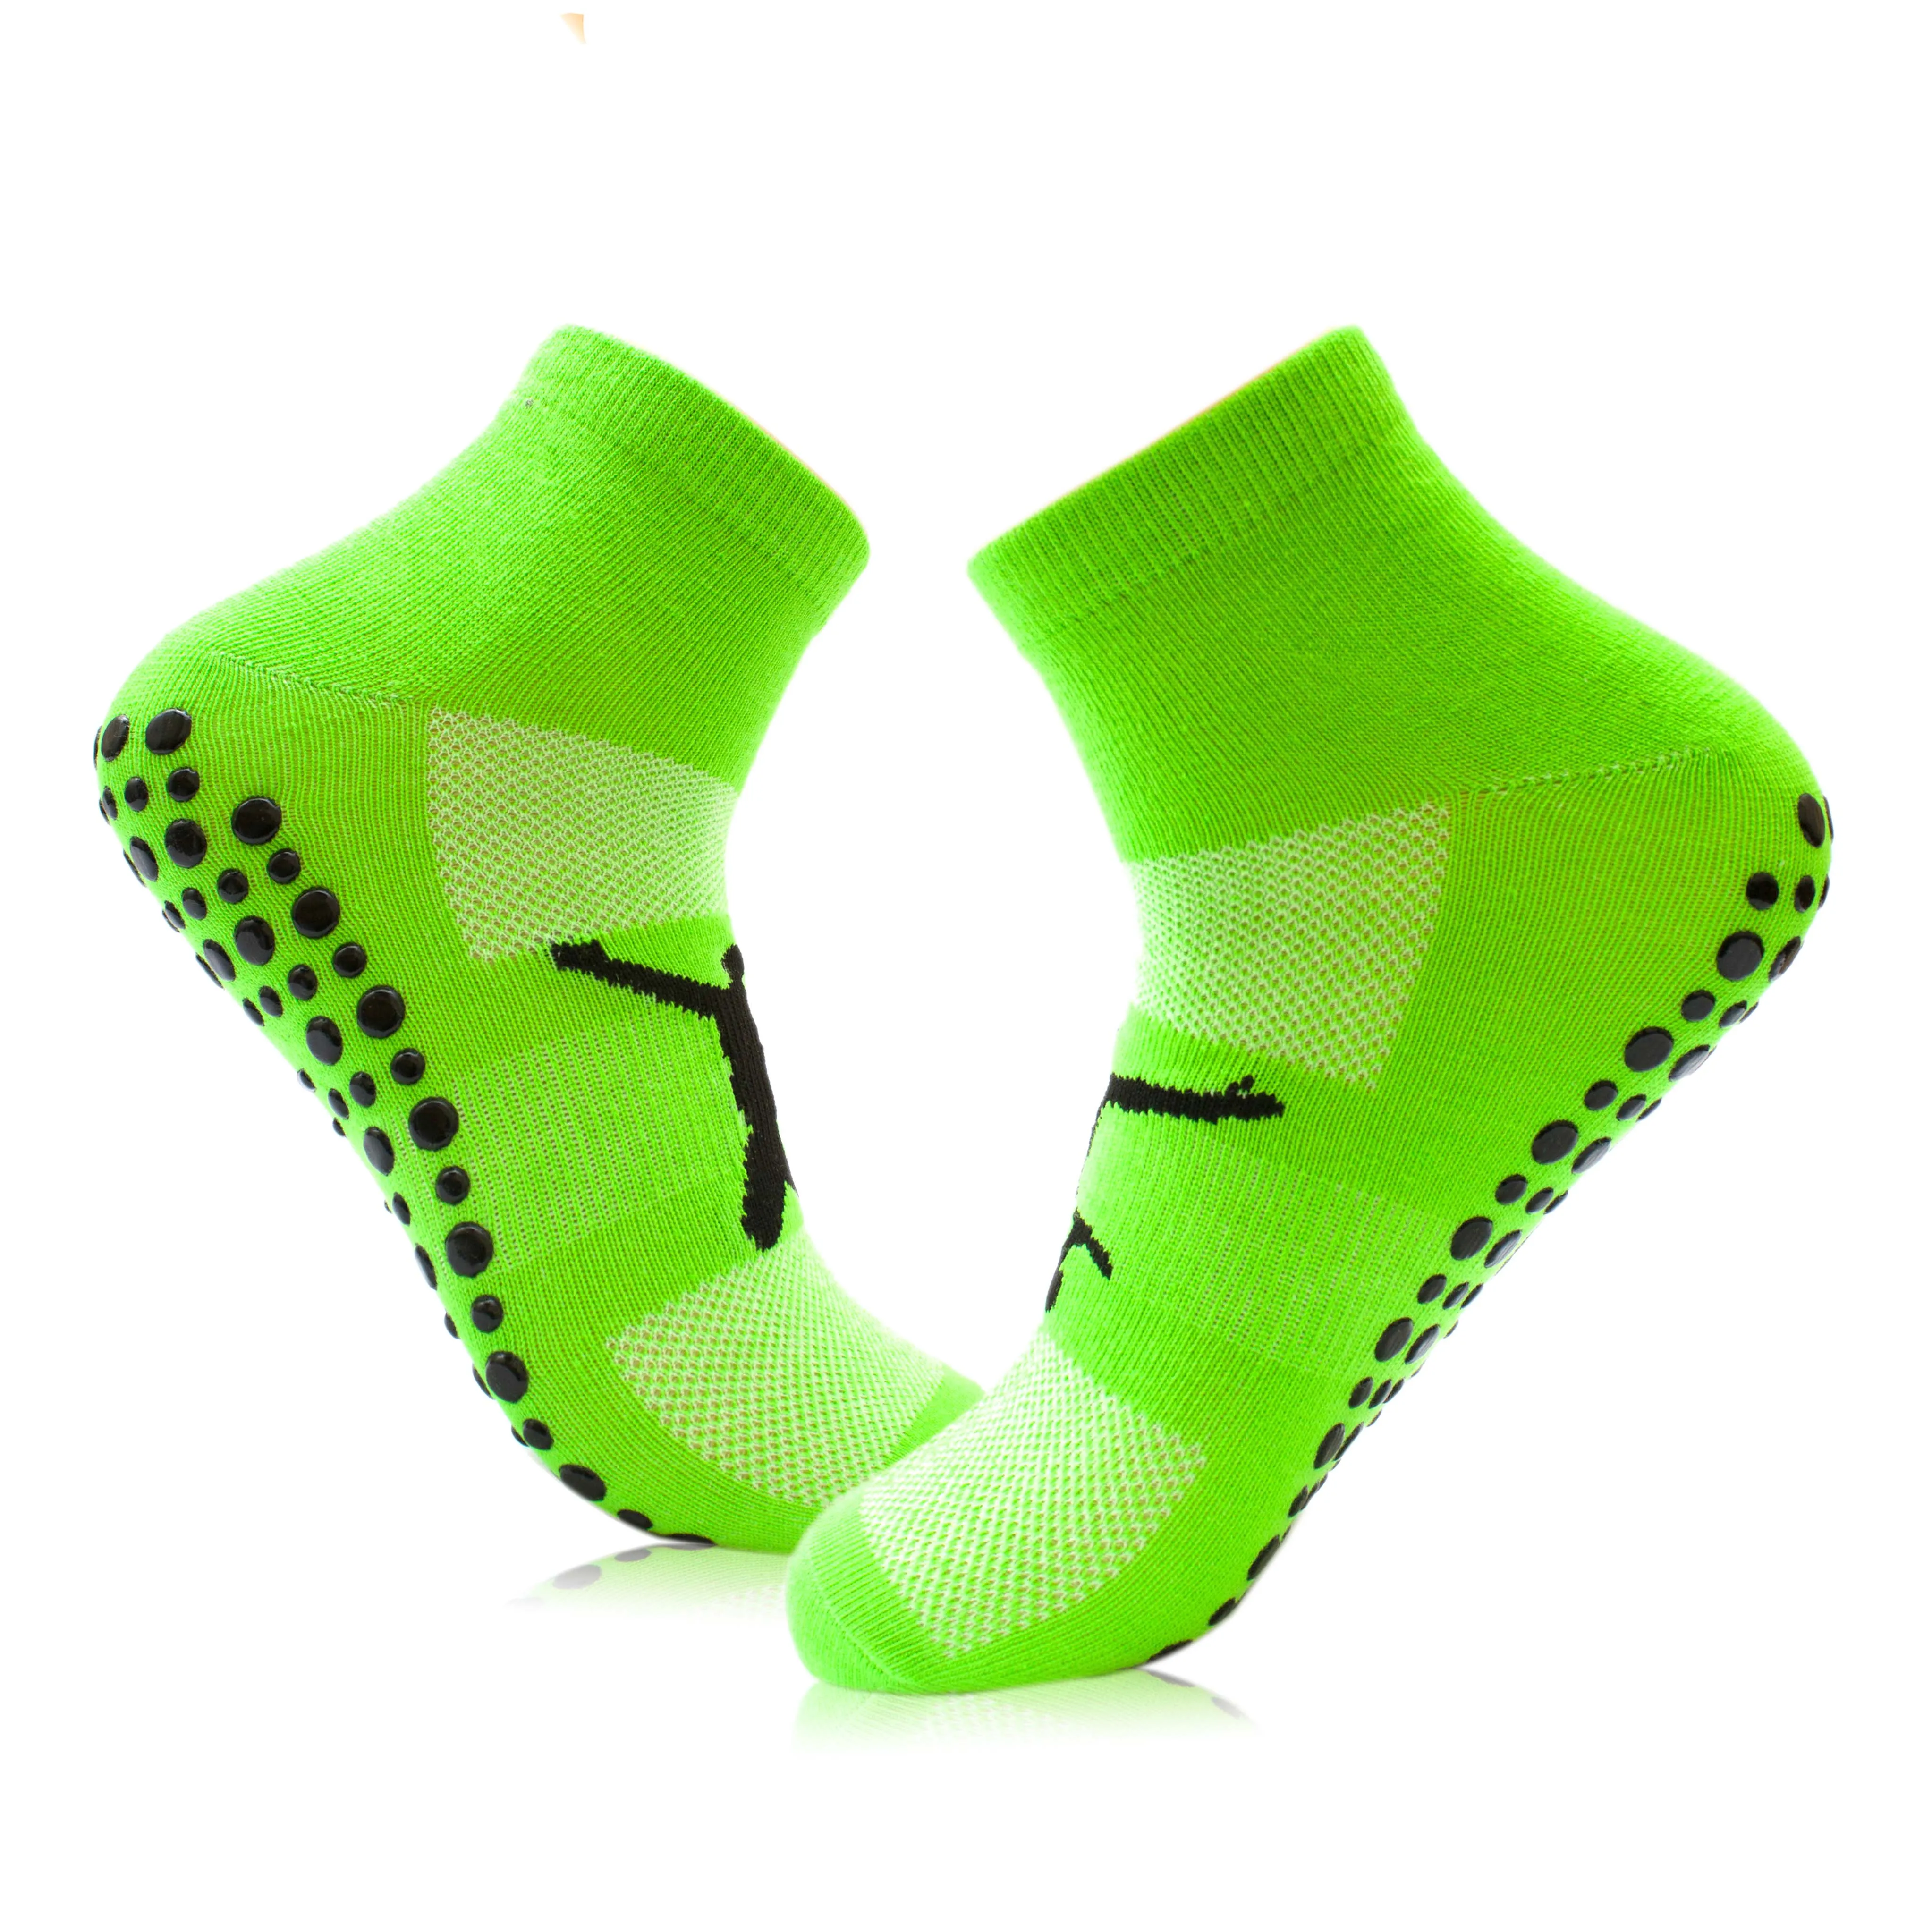 Non slip grip socks for indoor